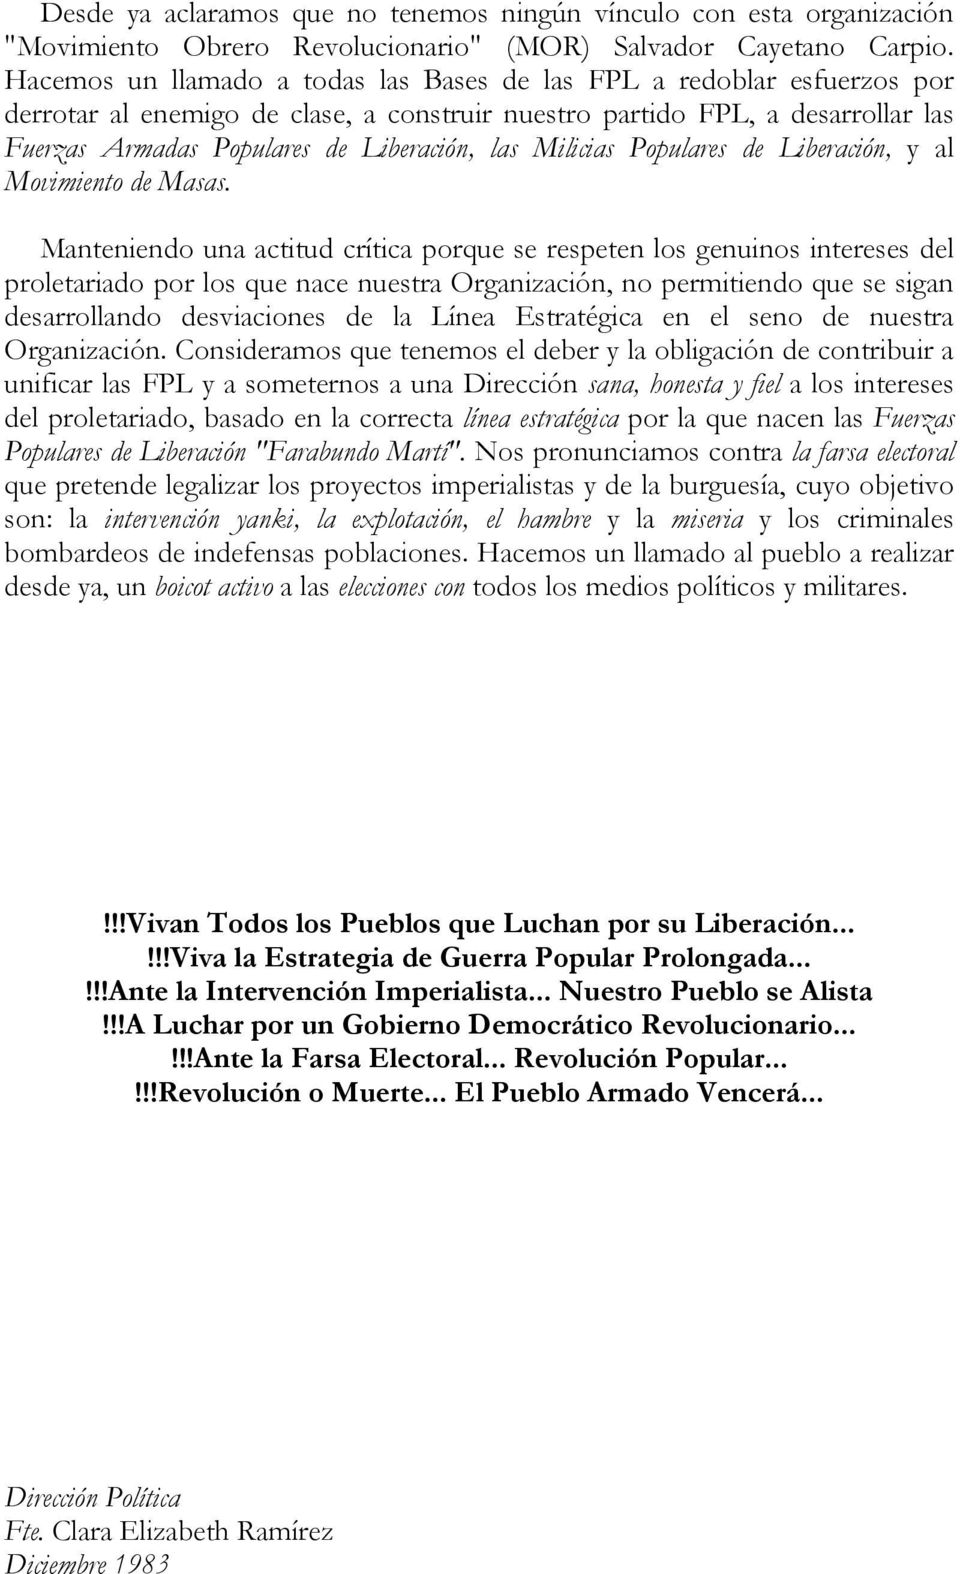 Milicias Populares de Liberación, y al Movimiento de Masas.